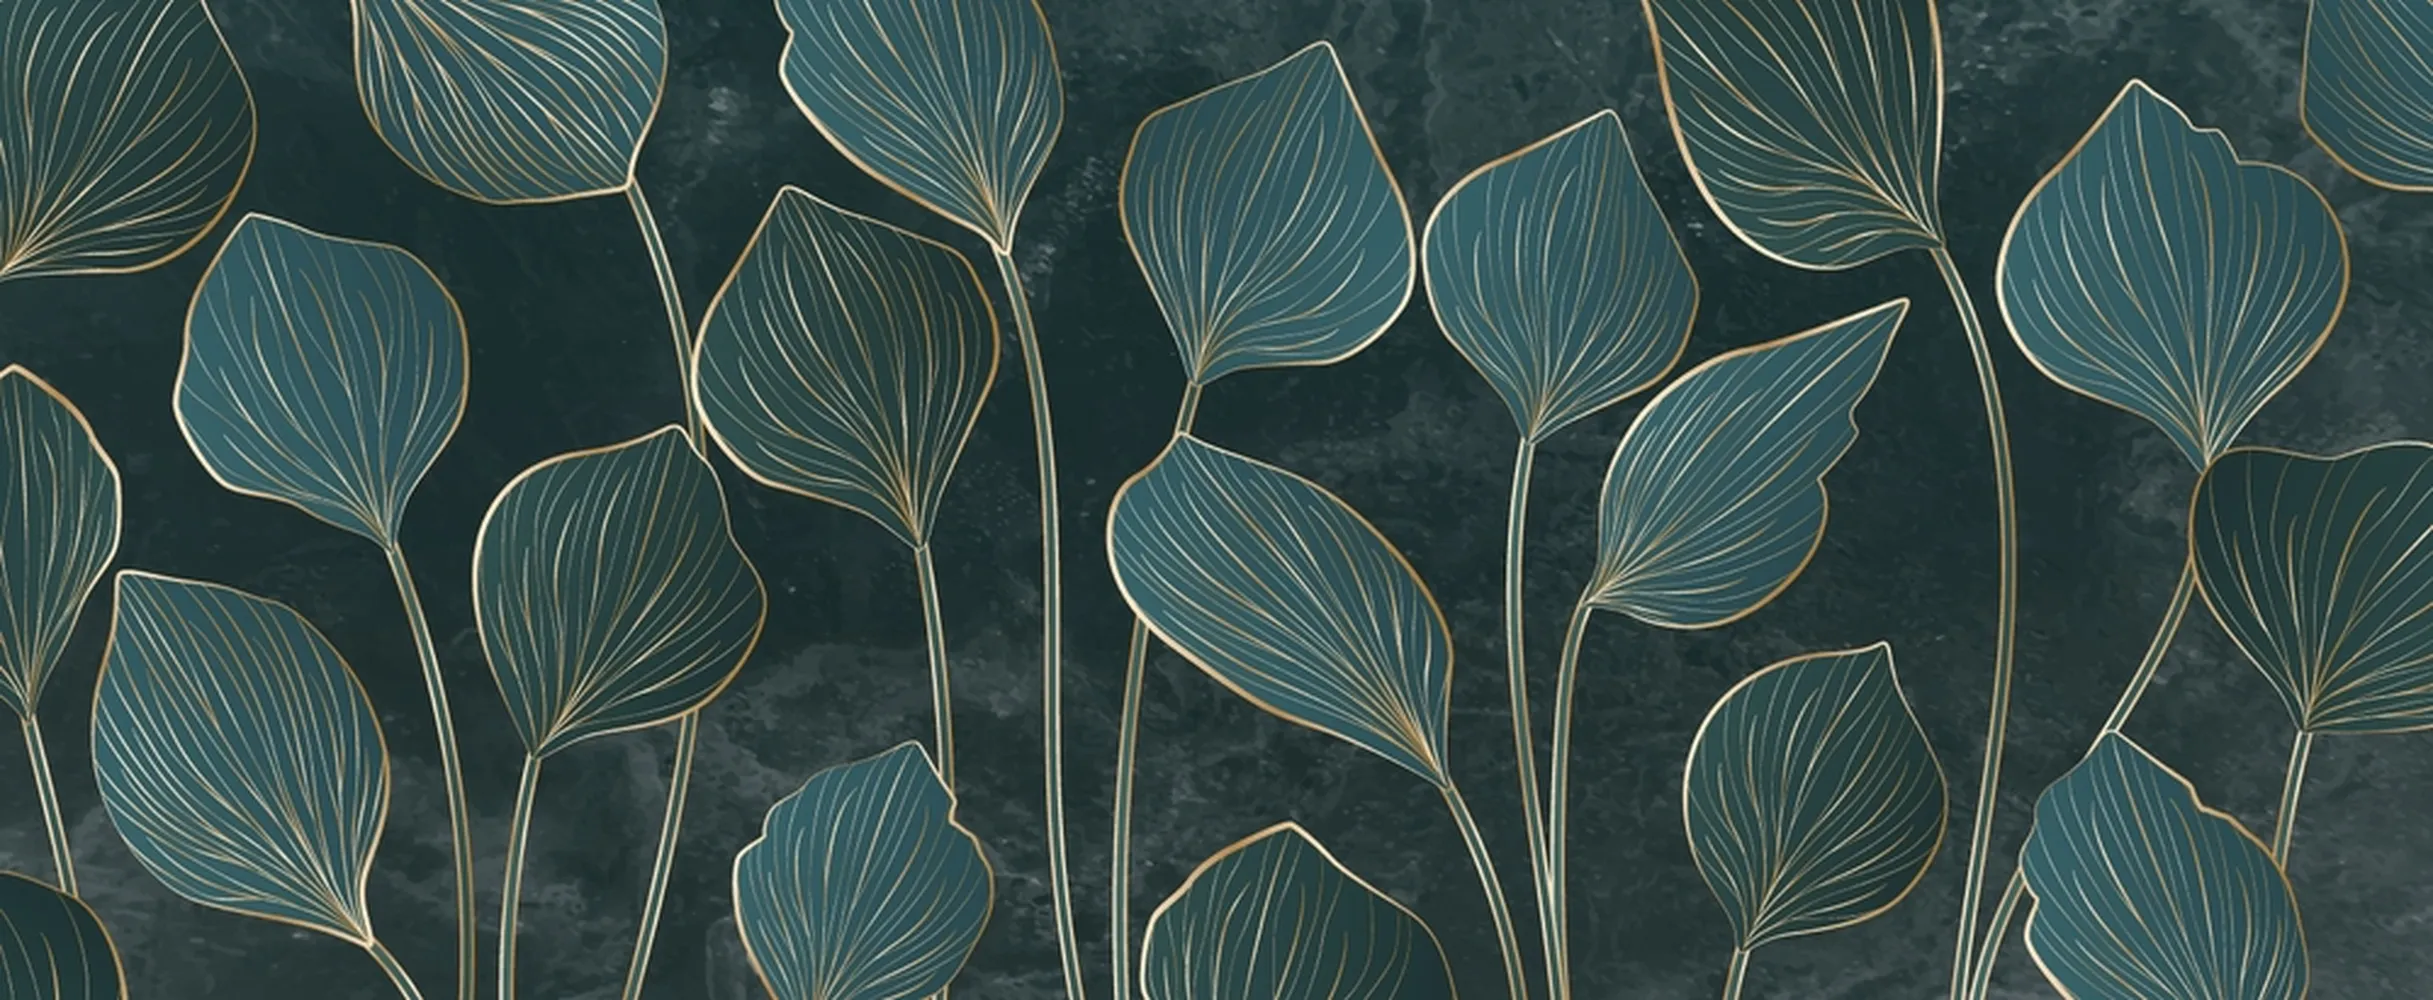 پوستر لوکس طرح برگهای سبز استوایی با خطهای طلایی